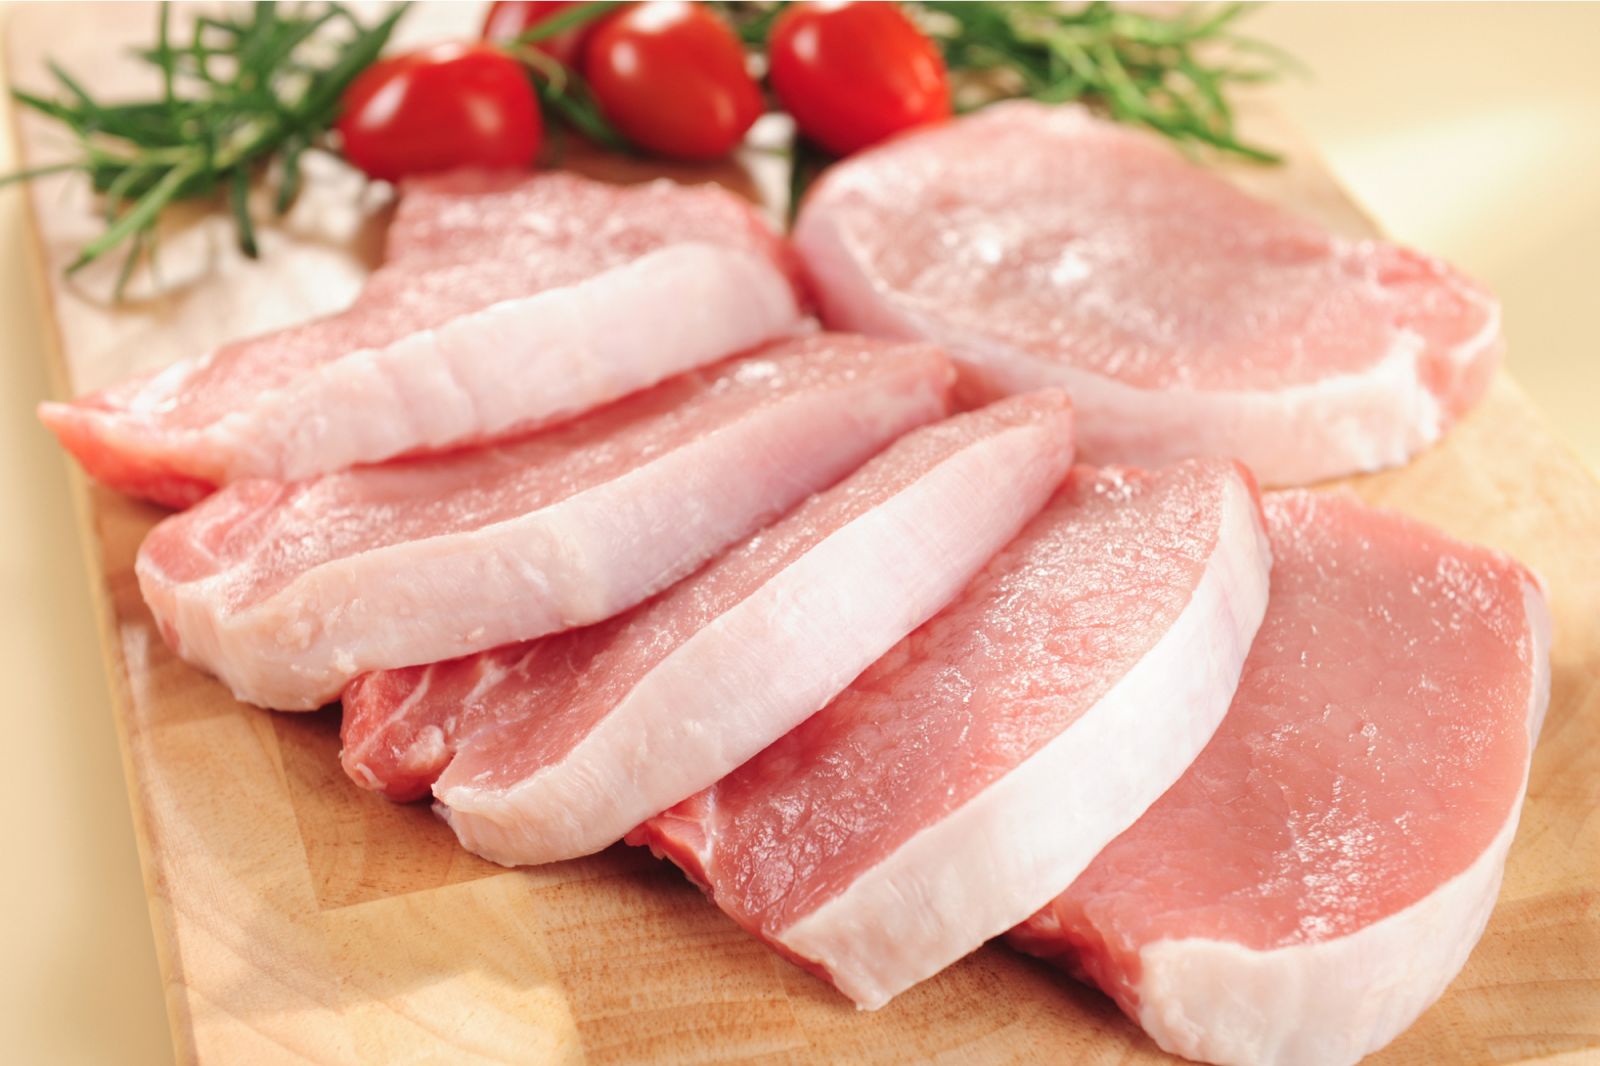 Trung bình, có khoảng 242 kcal calo trong 100 g thịt lợn.